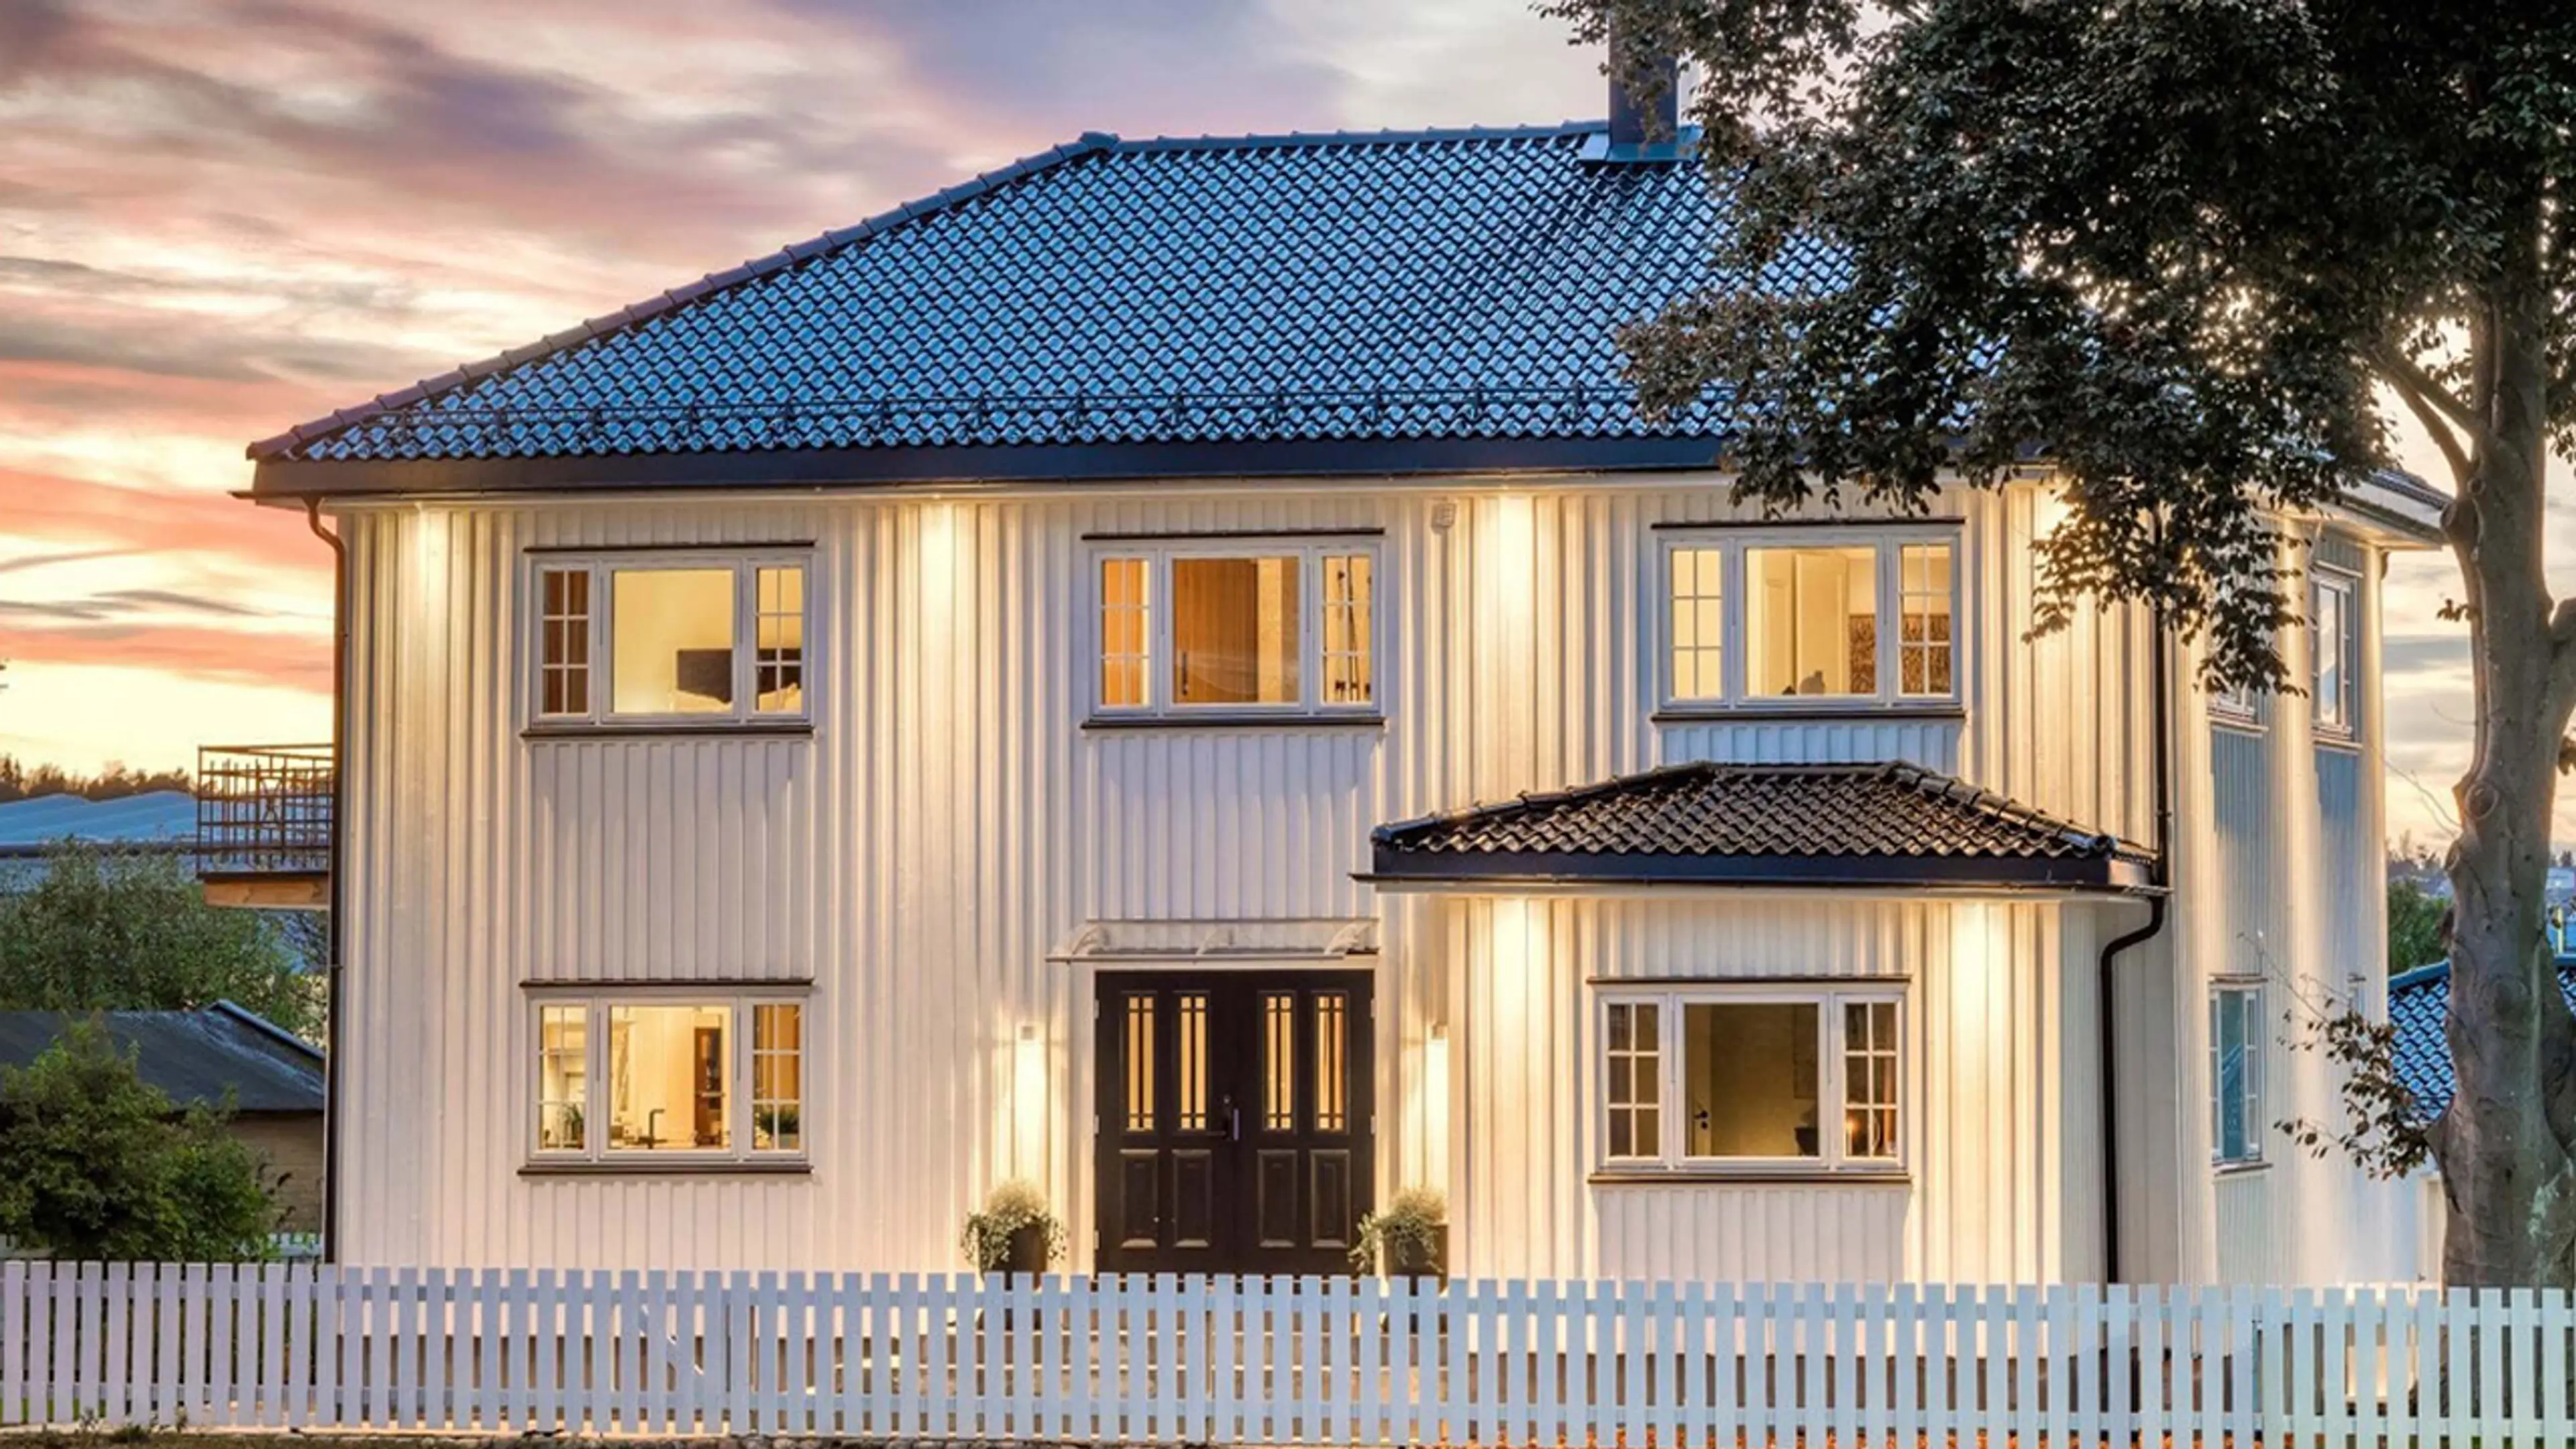 Hvitt hus med stakittgjerde og klassisk dobbel ytterdør i sort med profil og glass med sprosser.